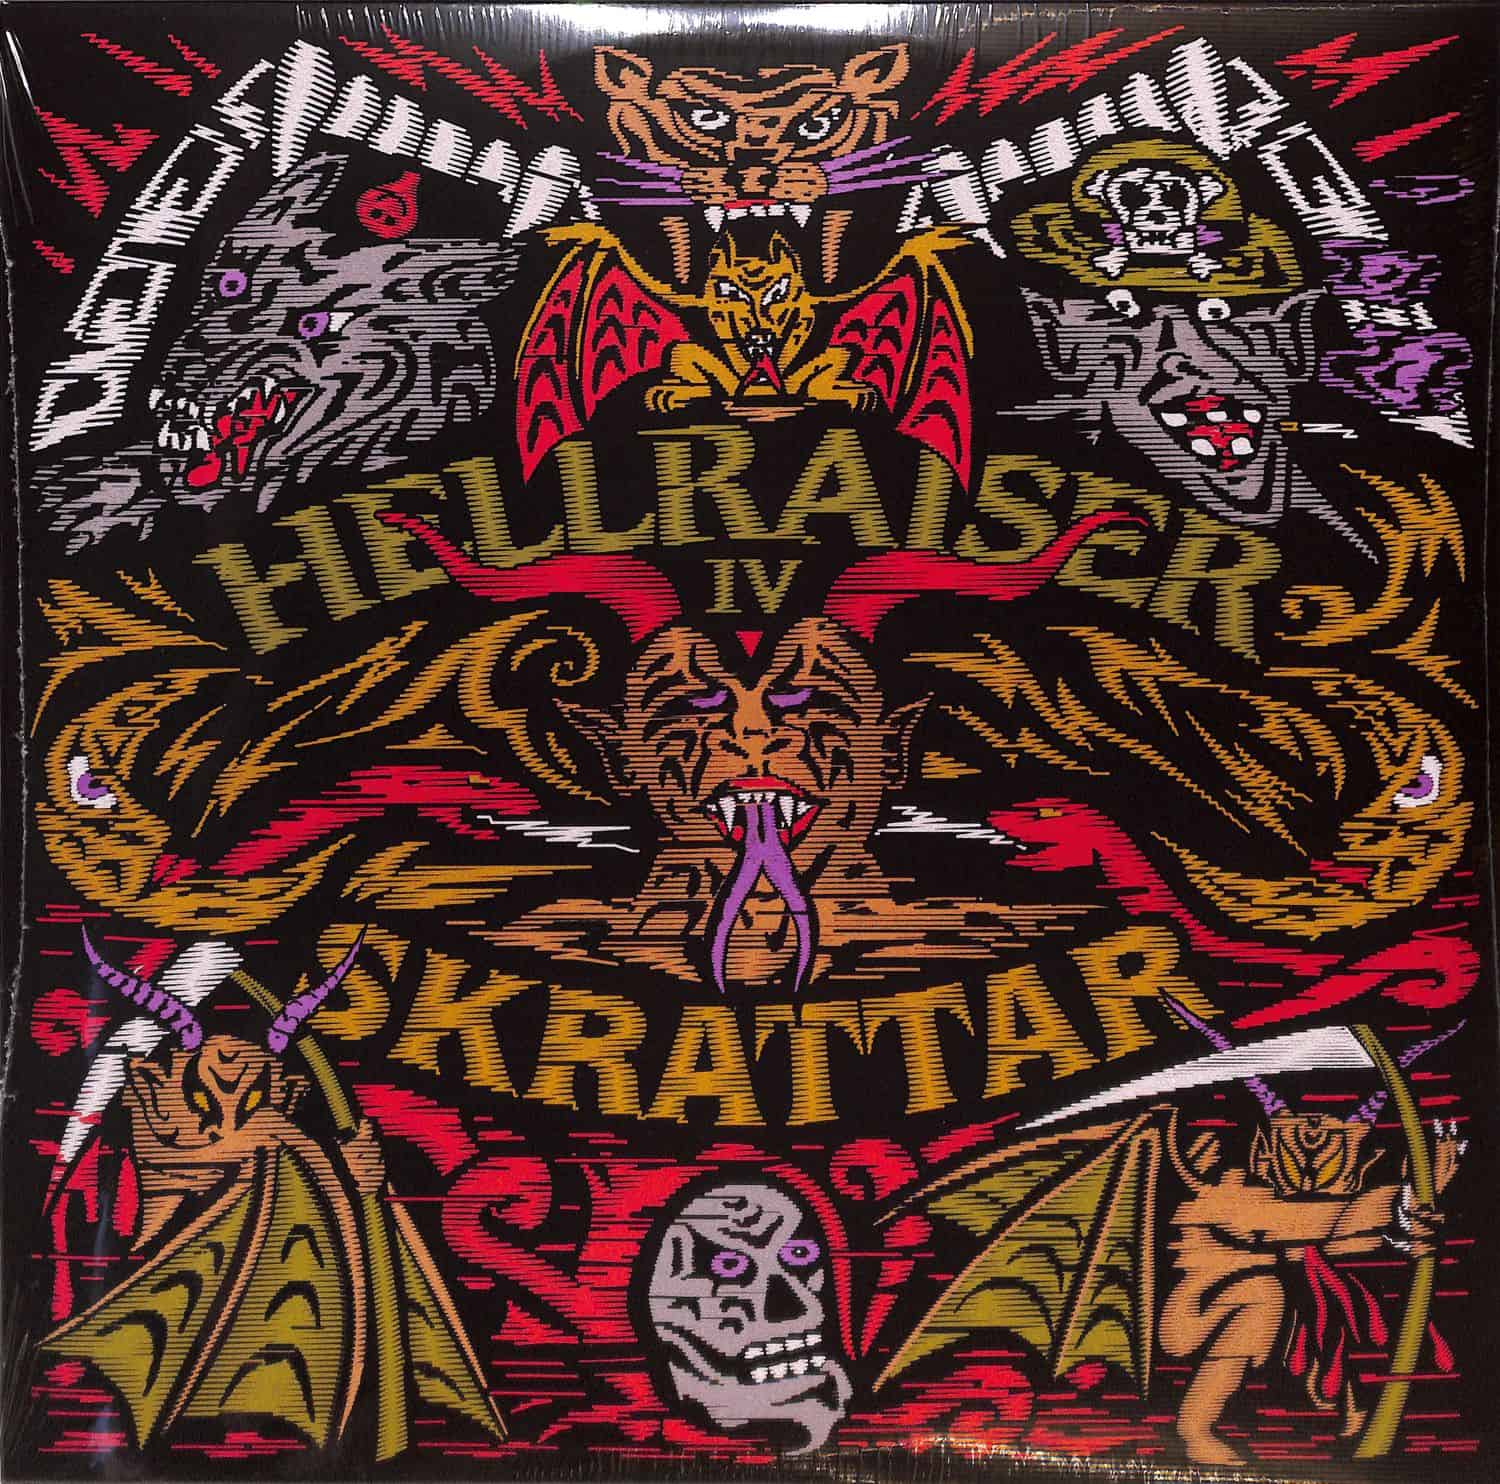 Skrattar - HELLRAISER IV 